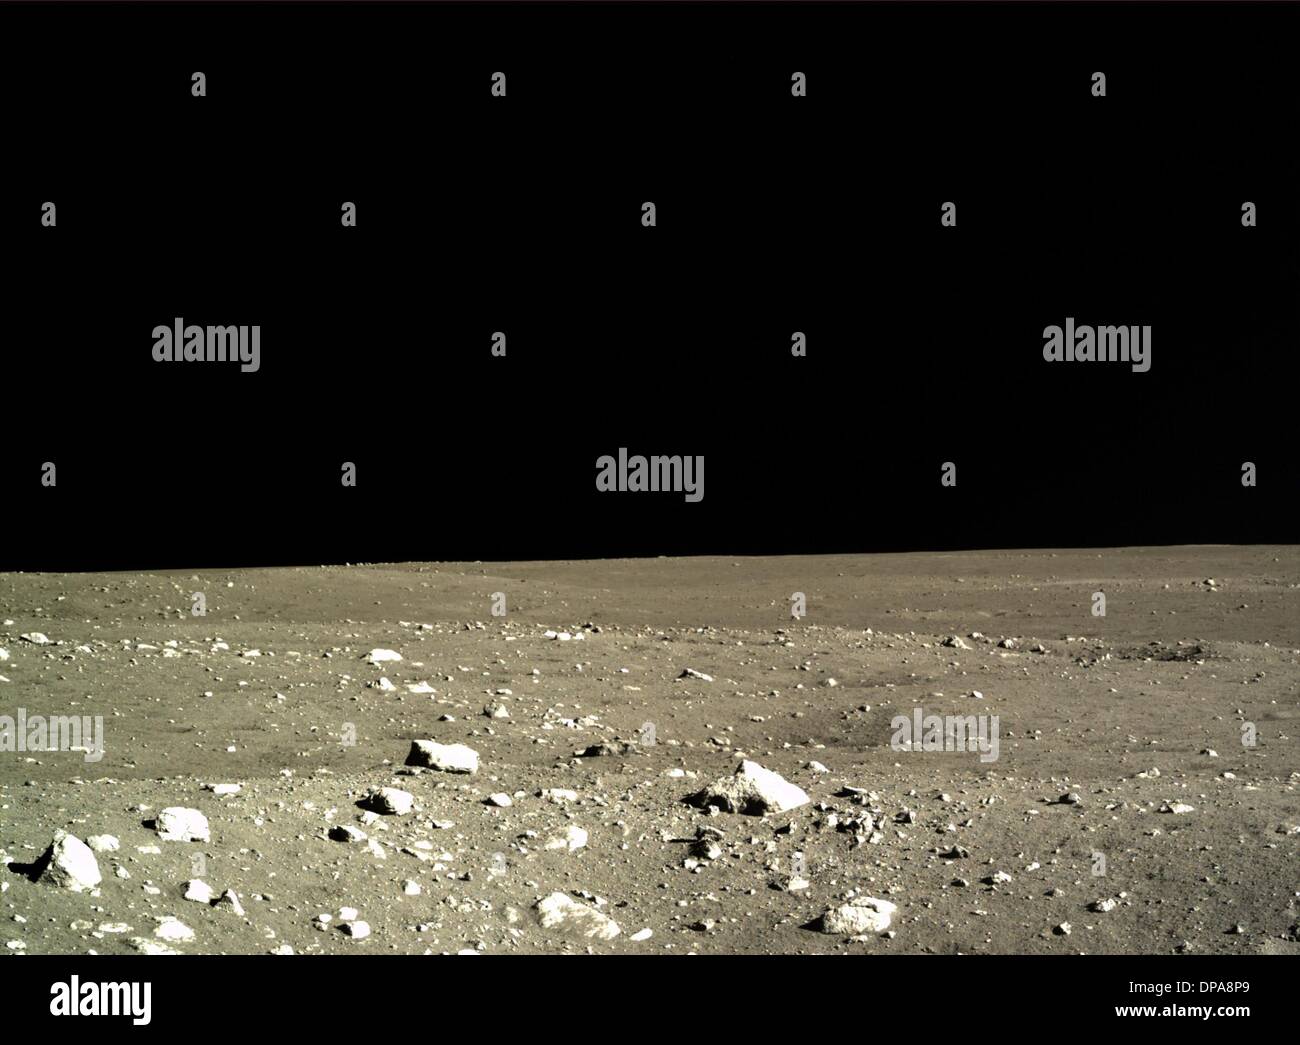 (140110) -- BEIJING, 10 janvier 2014 (Xinhua) -- Photo prise par la caméra de relief sur la Chang'e-3 moon lander le 15 décembre 2013, présente le paysage lunaire au cours de Chang'e-3 sonde lunaire de la mission premier jour lunaire cercle. L'Académie chinoise des sciences a publié un groupe de photos prises sur le paysage par l'atterrissage, l'appareil photo appareil photo appareil photo panoramique du relief et le 10 janvier 2014. La sonde lunaire Chang'e-3, la première lune rover à bord, a atterri sur la lune le 14 décembre 2013, marquant la première fois que la Chine a envoyé un engin spatial à soft et la surface d'un corps extraterrestre. (Xi Banque D'Images